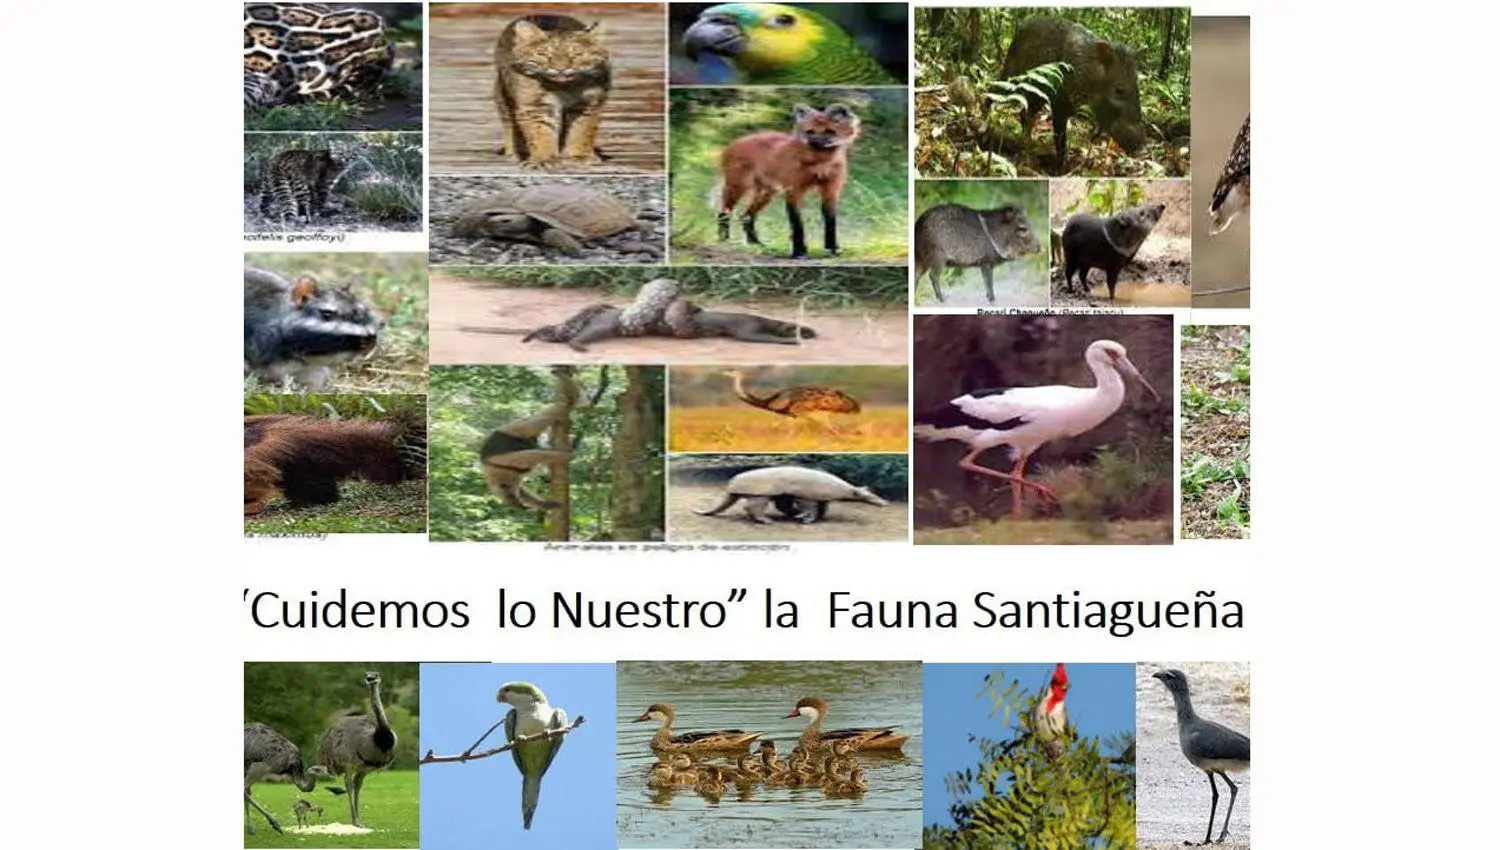 flora y fauna de santiago del estero imagenes - Cuáles son los animales en peligro de extinción en Santiago del Estero